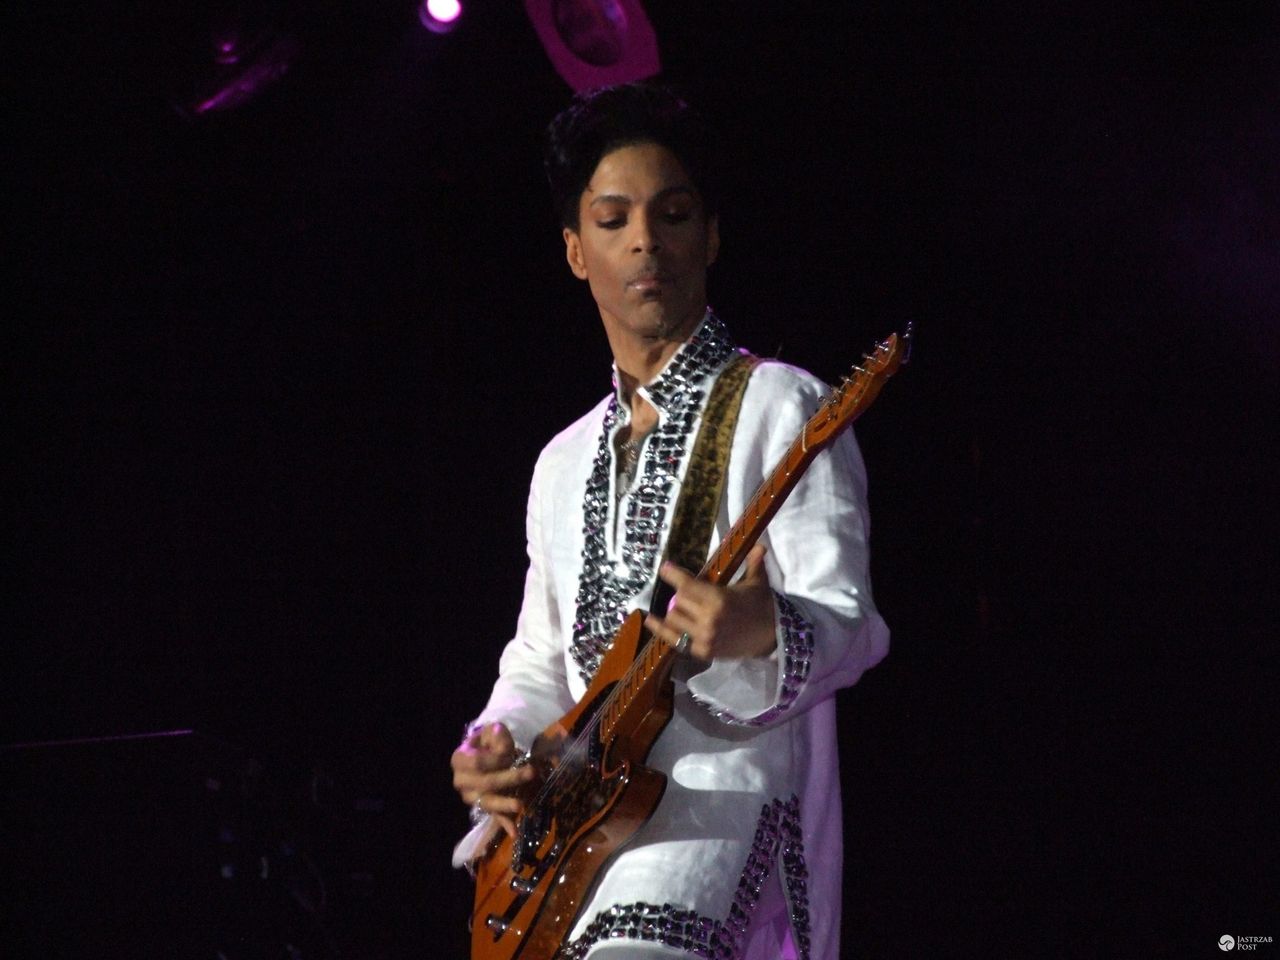 Prince (ur. 7 czerwca 1958, zm. 21 kwietnia 2016) – amerykański muzyk